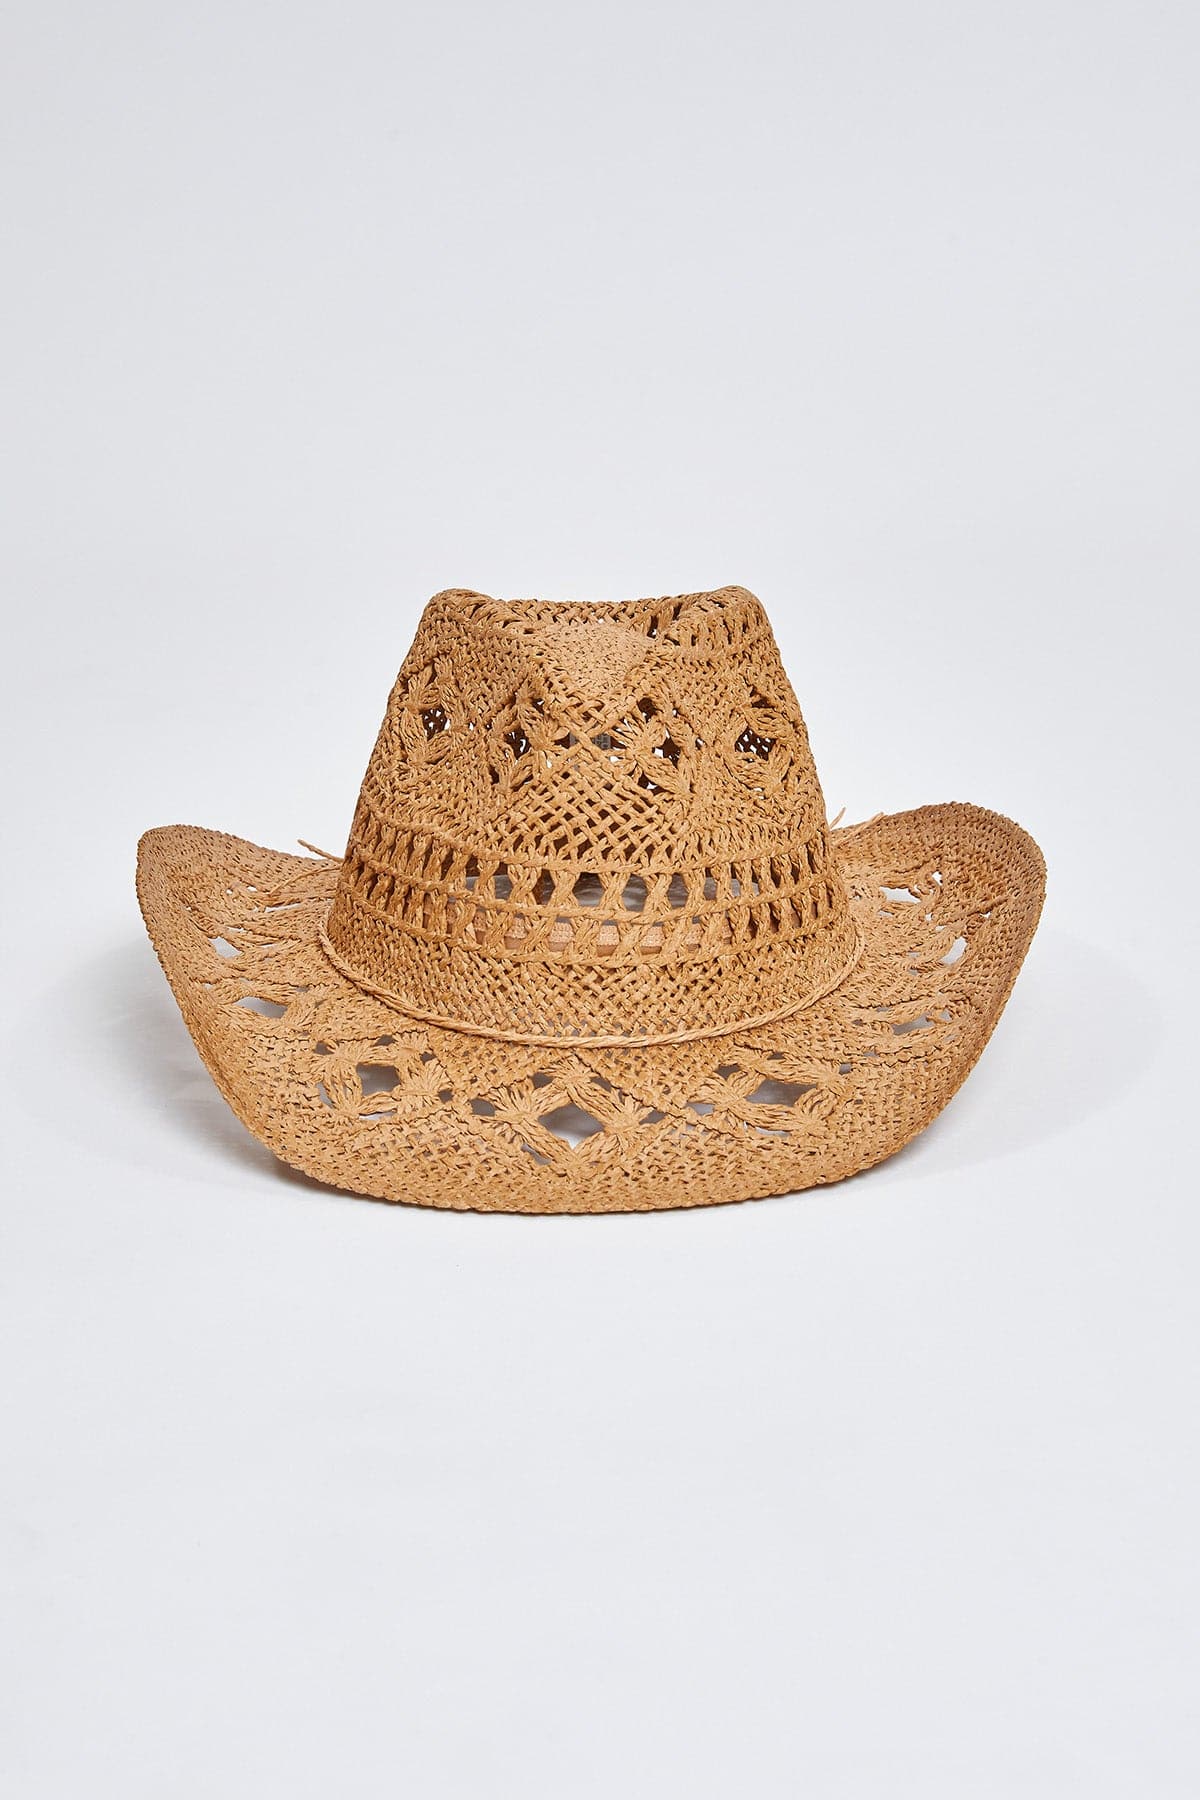 Cheyenne Tan Straw Cowboy Hat